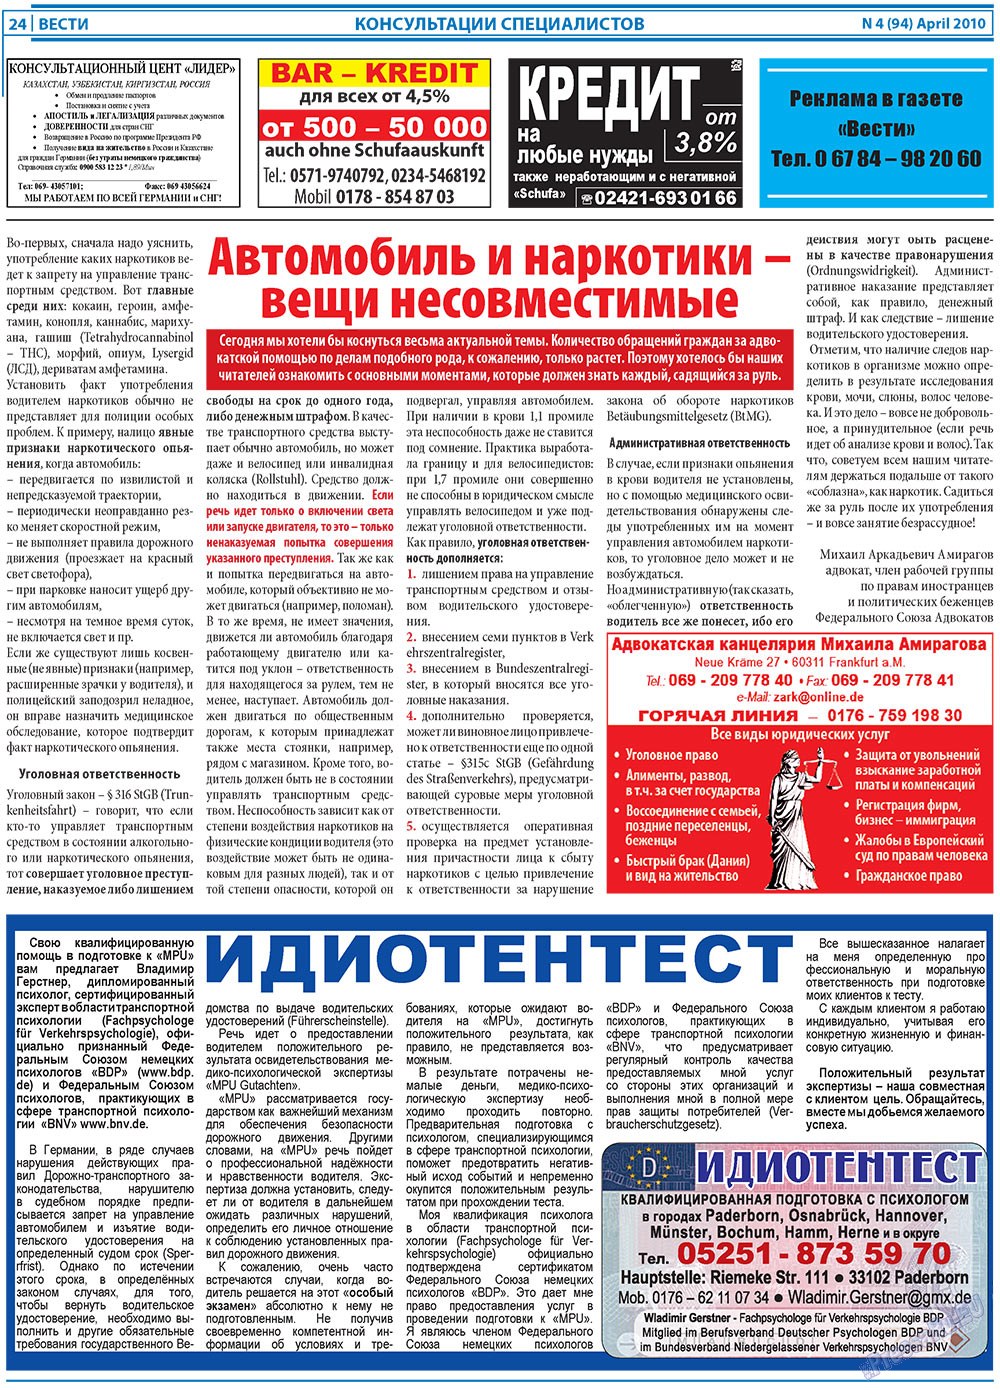 Вести, газета. 2010 №4 стр.24